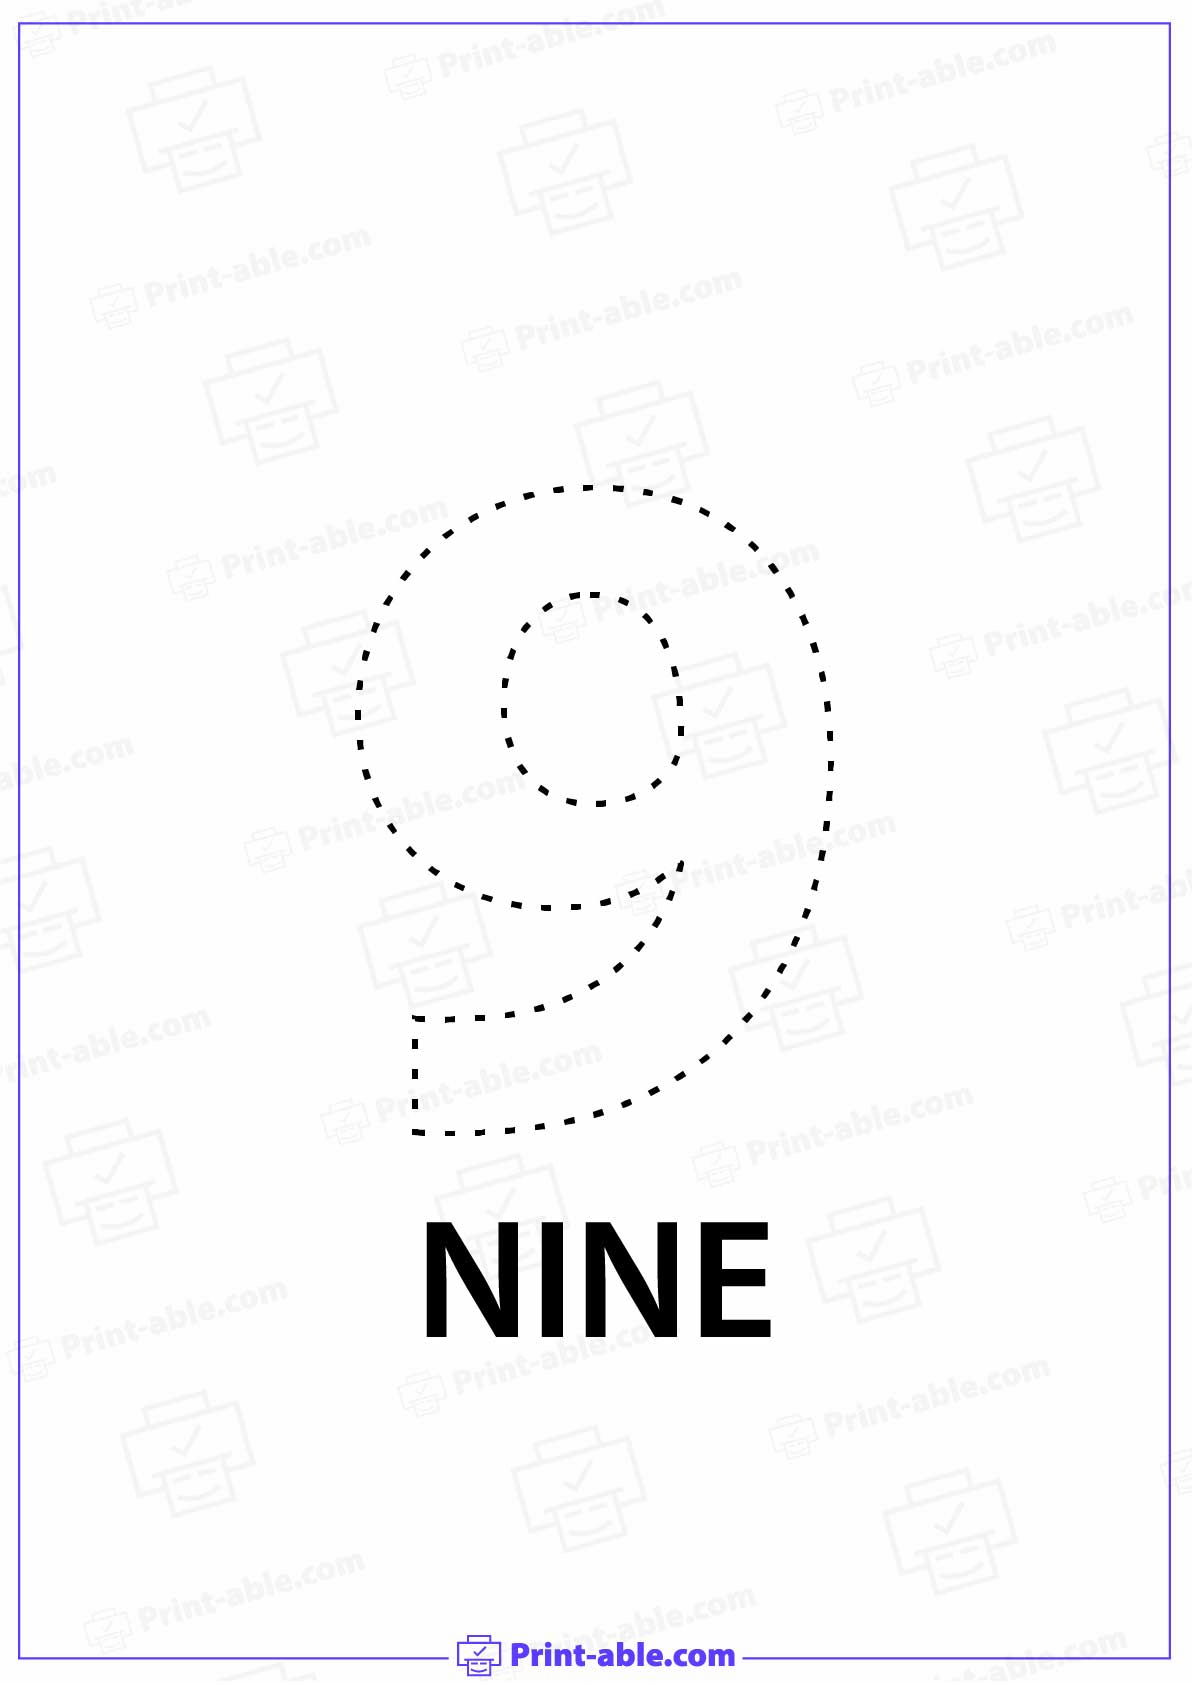 Number Nine Printable Worksheet Free Download